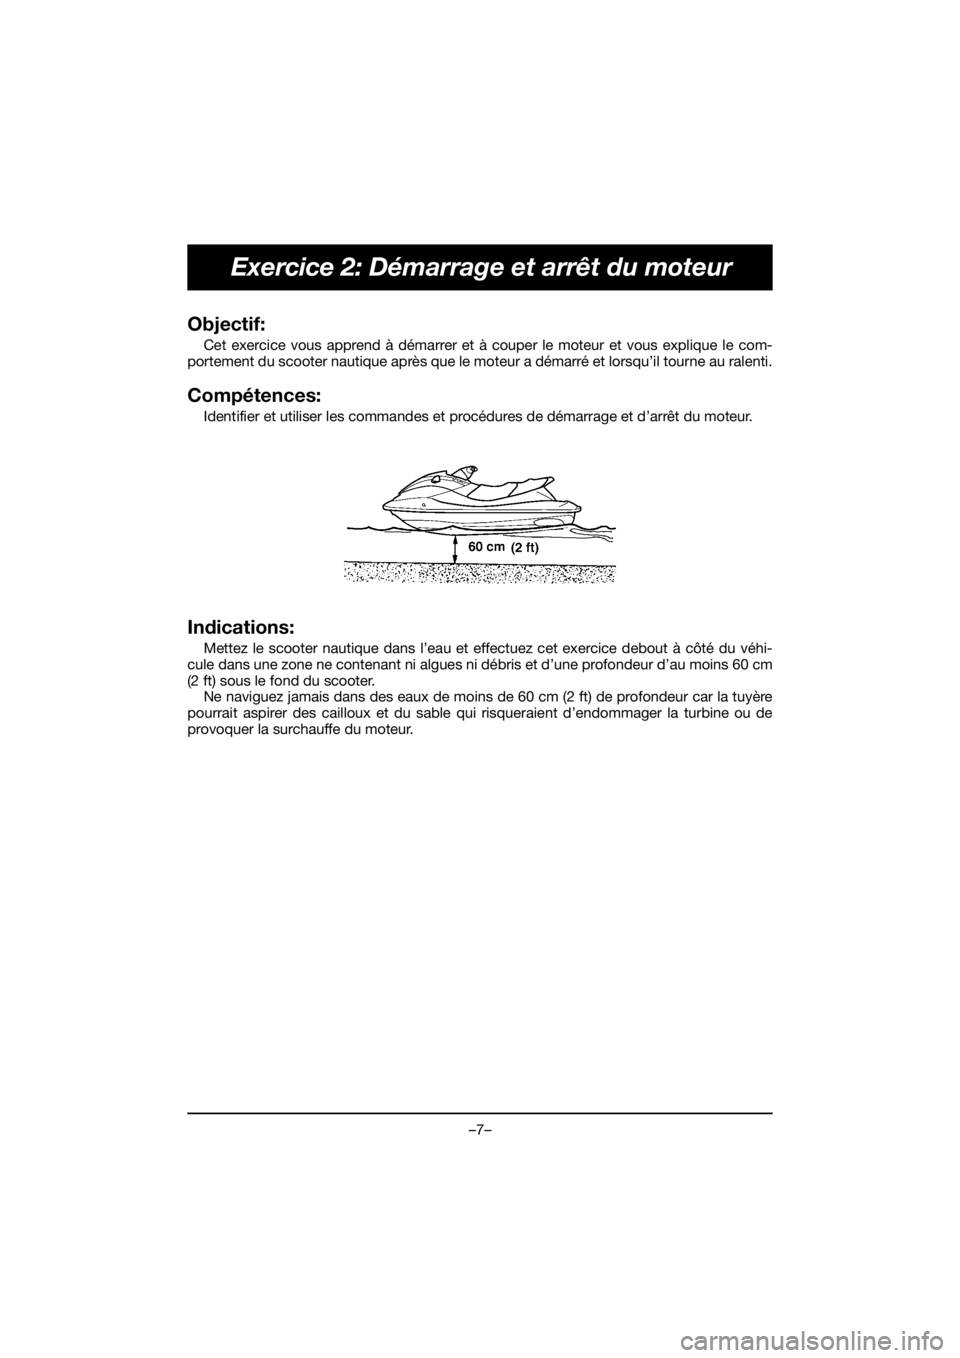 YAMAHA EX SPORT 2020  Manuale de Empleo (in Spanish) –7–
Exercice 2: Démarrage et arrêt du moteur
Objectif: 
Cet exercice vous apprend à démarrer et à couper le moteur et vous explique le com-
portement du scooter nautique après que le moteur 